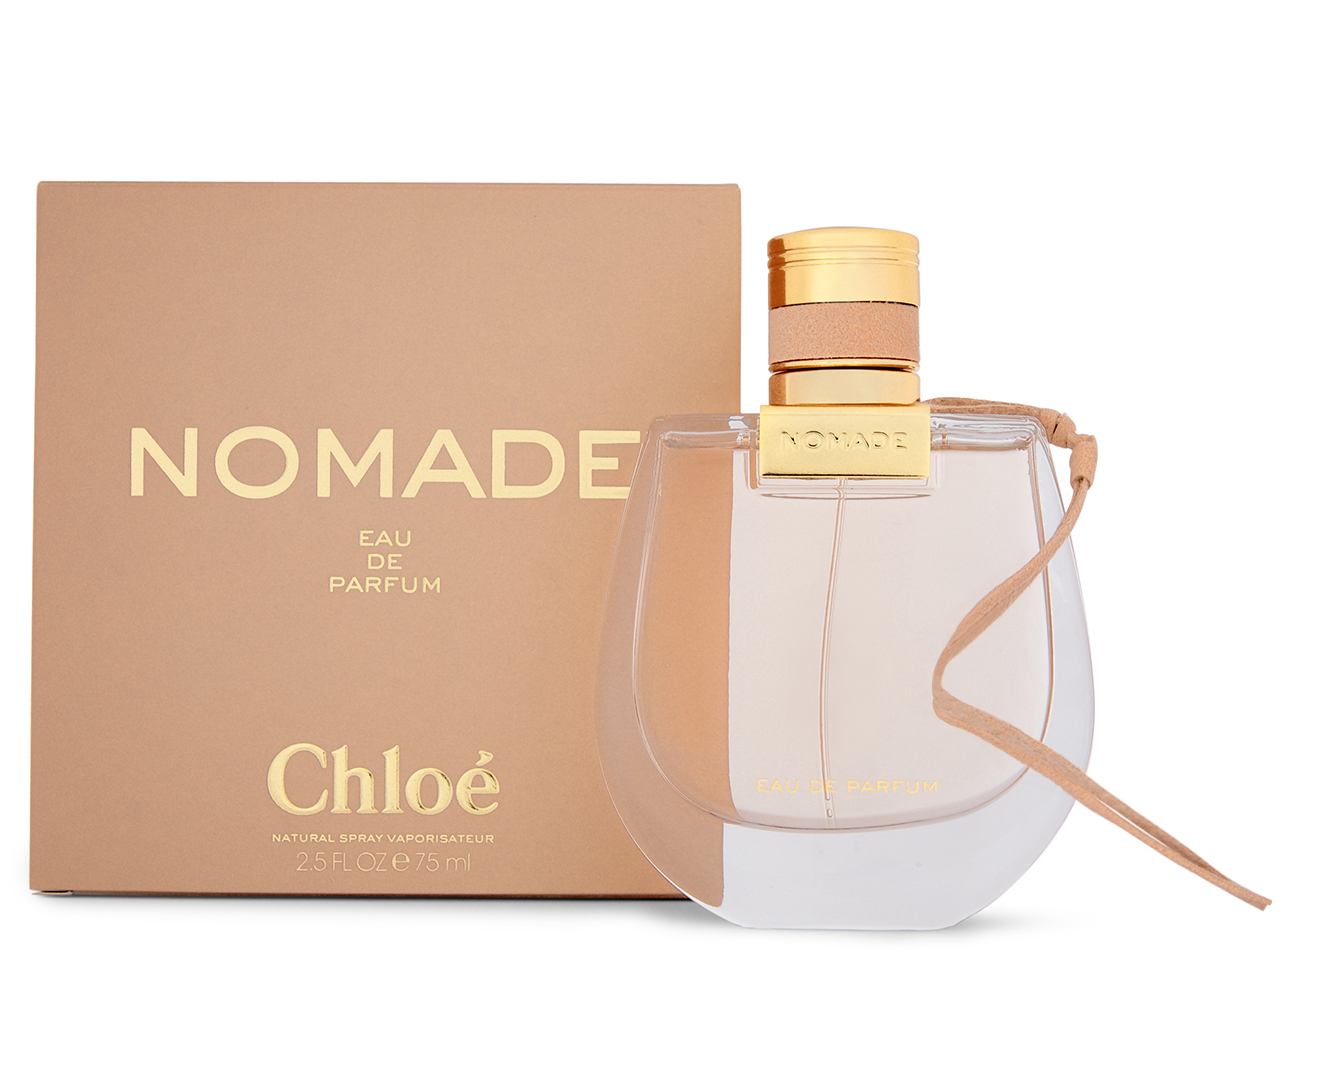 Chloé Nomade For Women EDP Perfume 75mL | Catch.com.au